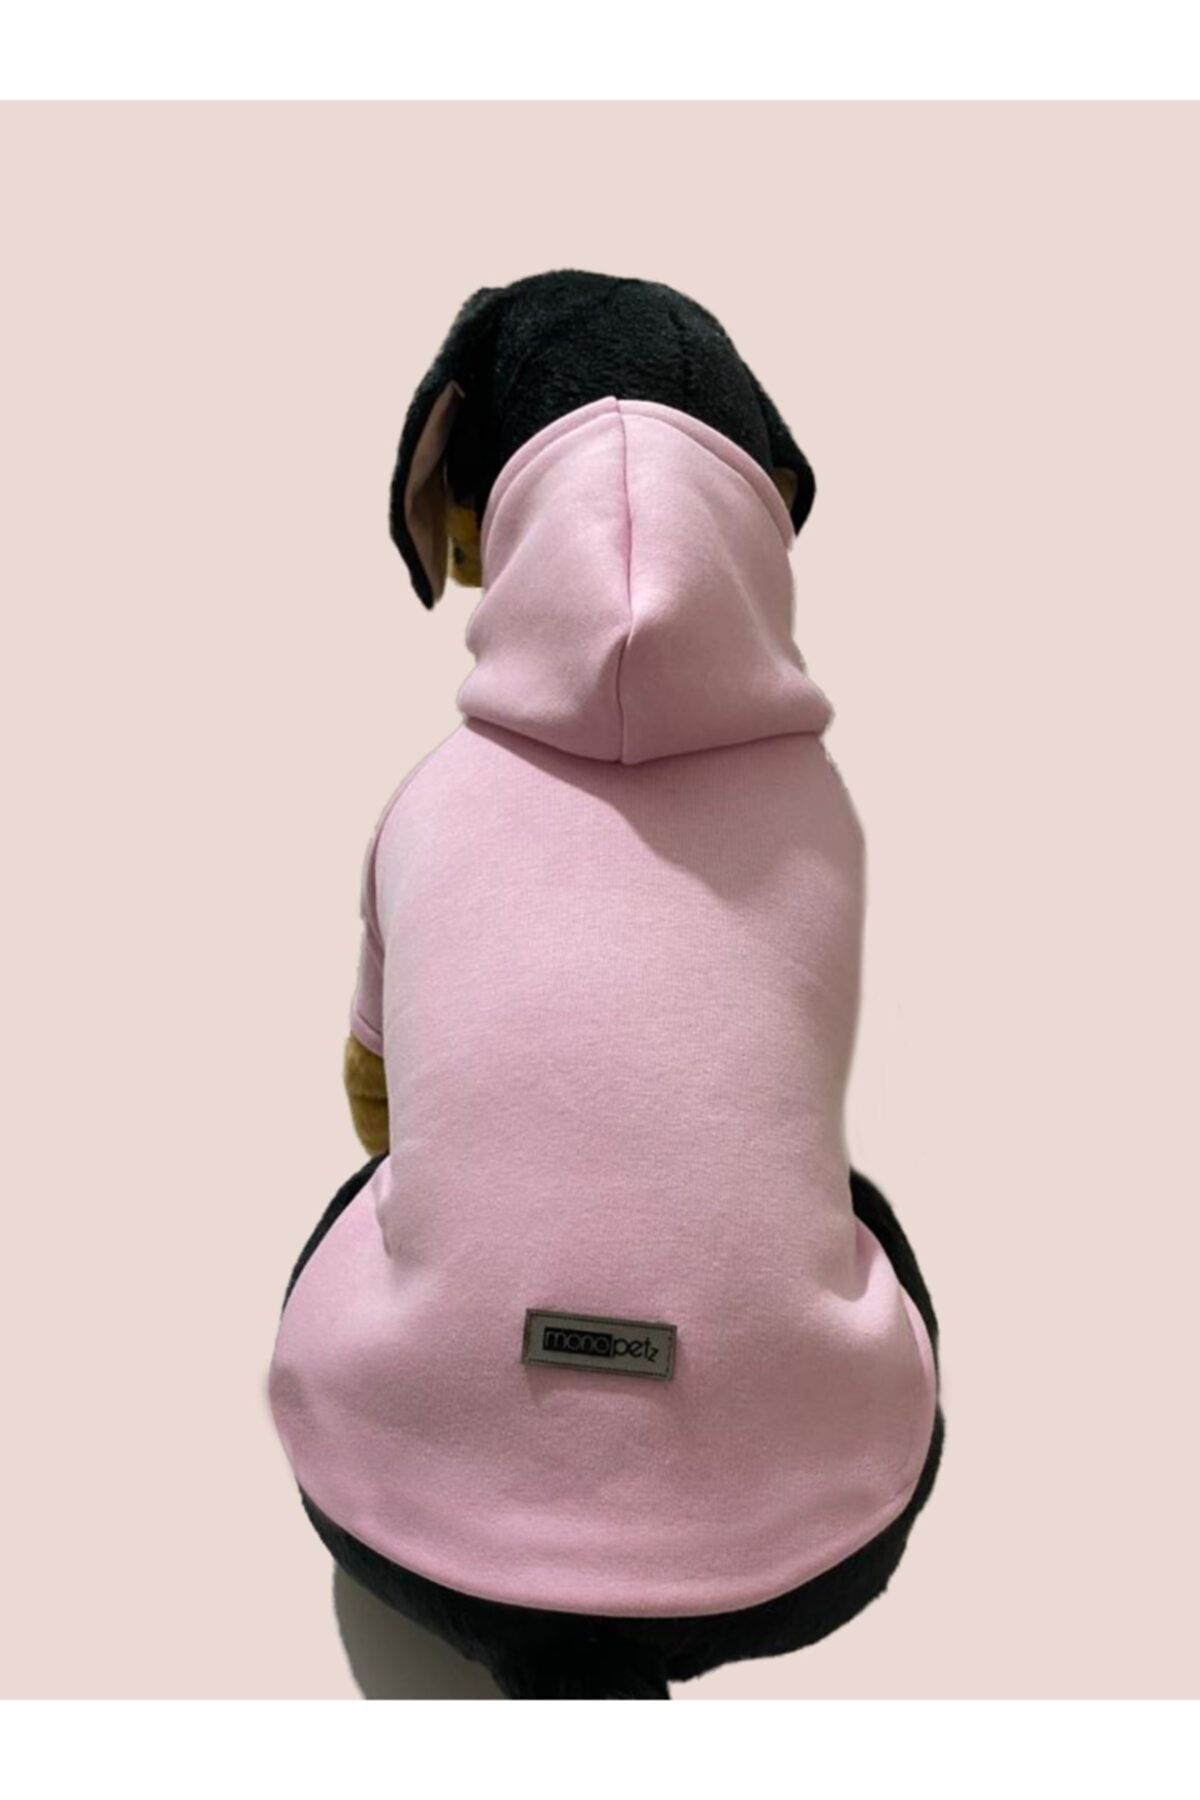 Monopetz سویشرت کلاهدار لباس سگ و گربه - صورتی ساده 01